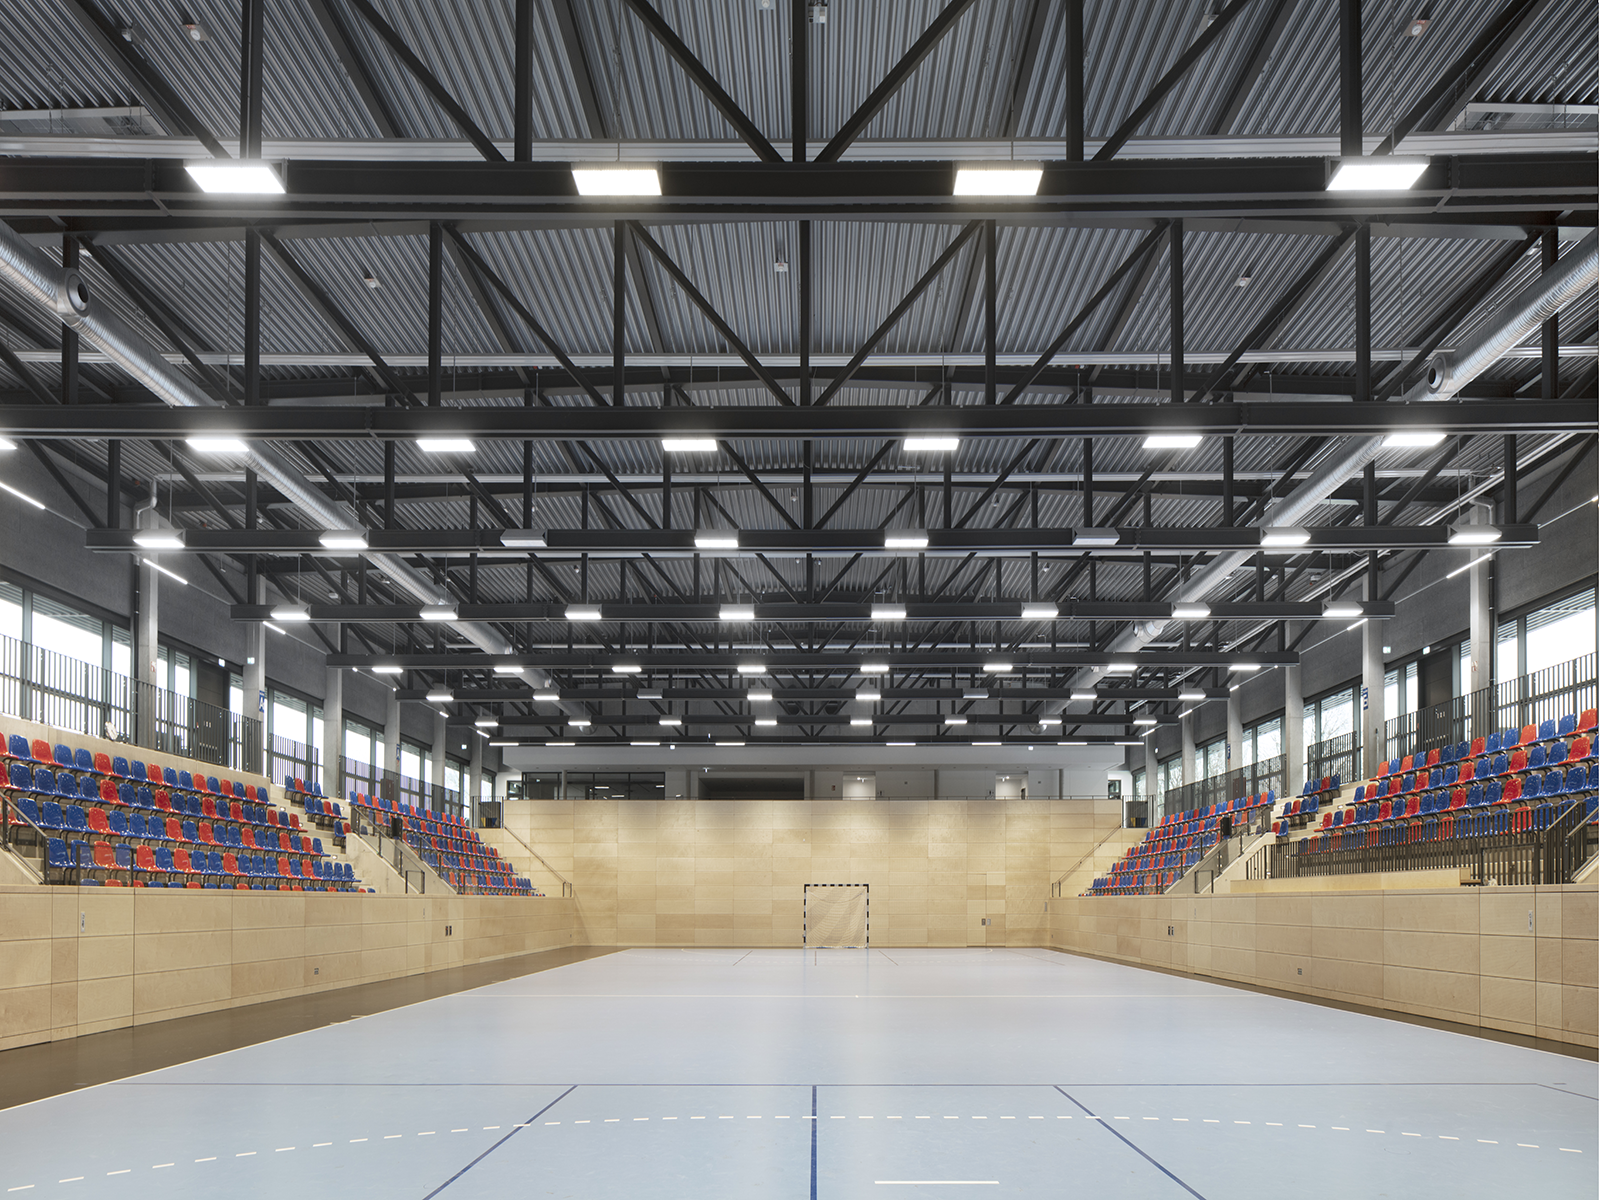 Vinnhorst, a sports arena for handball and gymnastics